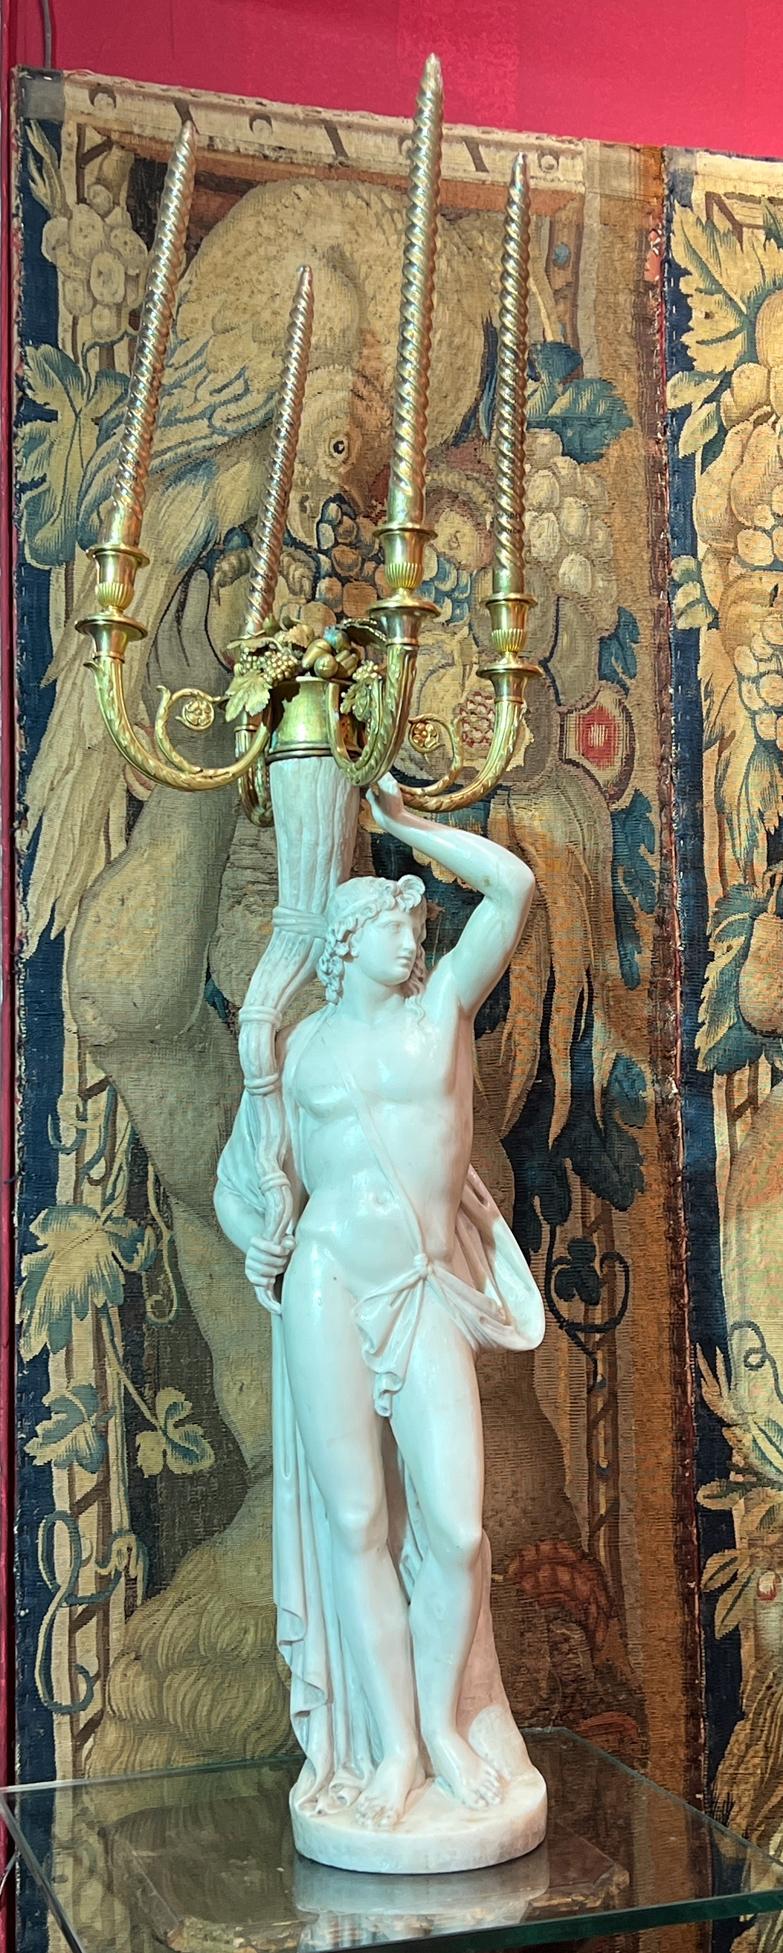 Unser monumentales Paar Kandelaber aus dem 18. Jahrhundert französischer Herkunft stellt ein römisches neoklassizistisches Männchen und eine Frau dar, die ein Füllhorn halten, fein geschnitzt aus weißem Marmor, mit vier Kerzenhaltern aus